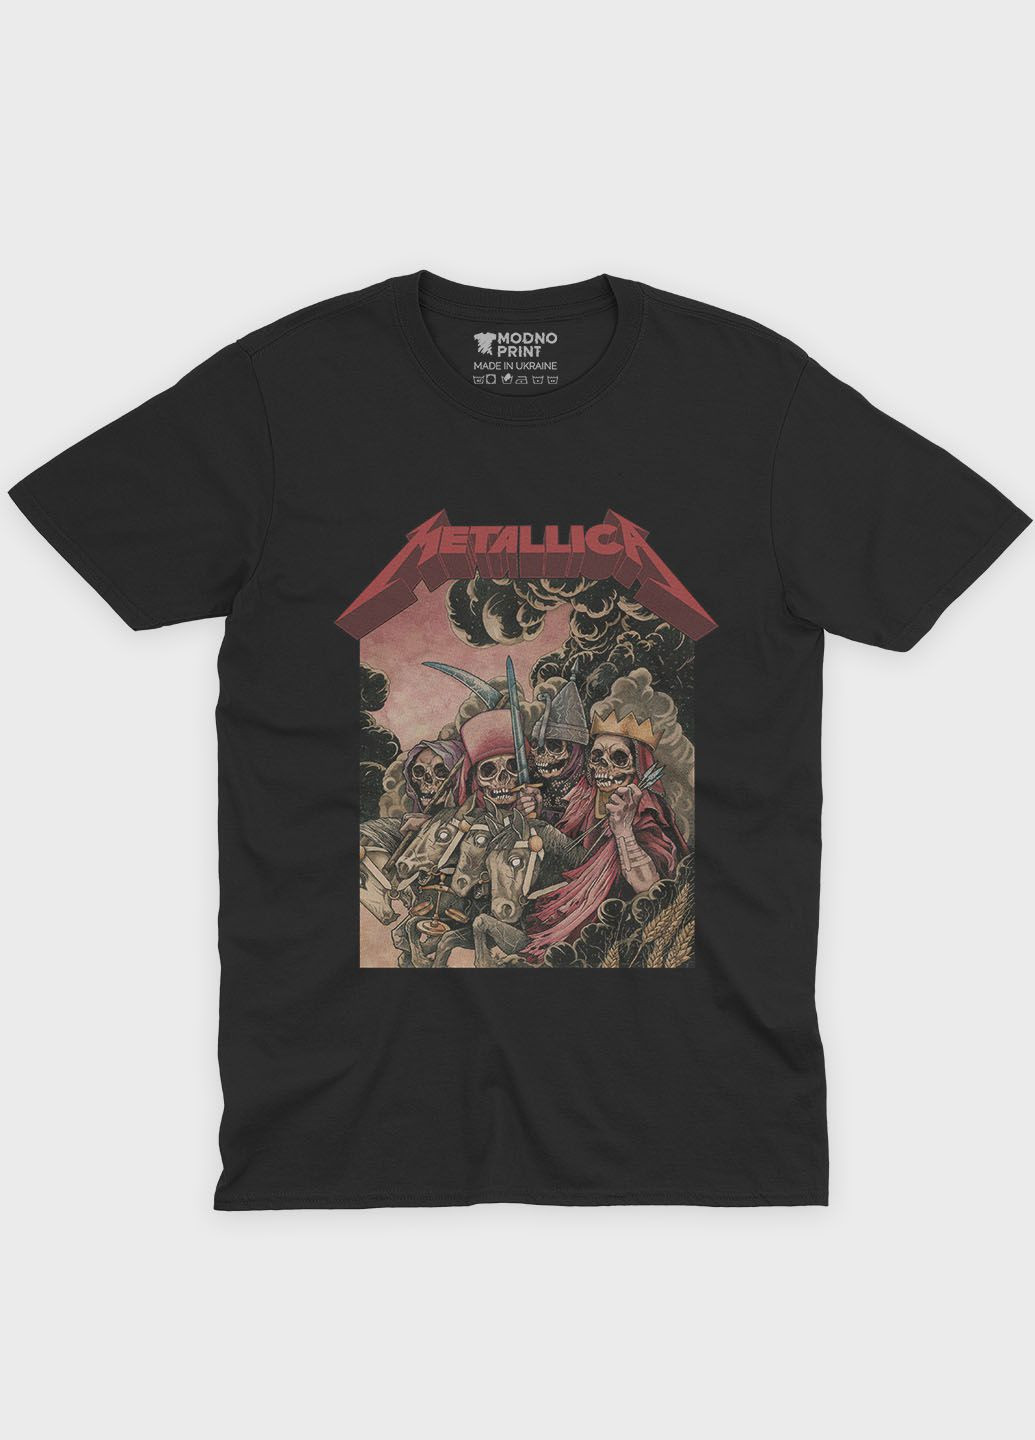 Чорна чоловіча футболка з рок принтом "metallica" (ts001-3-bl-004-2-208) Modno